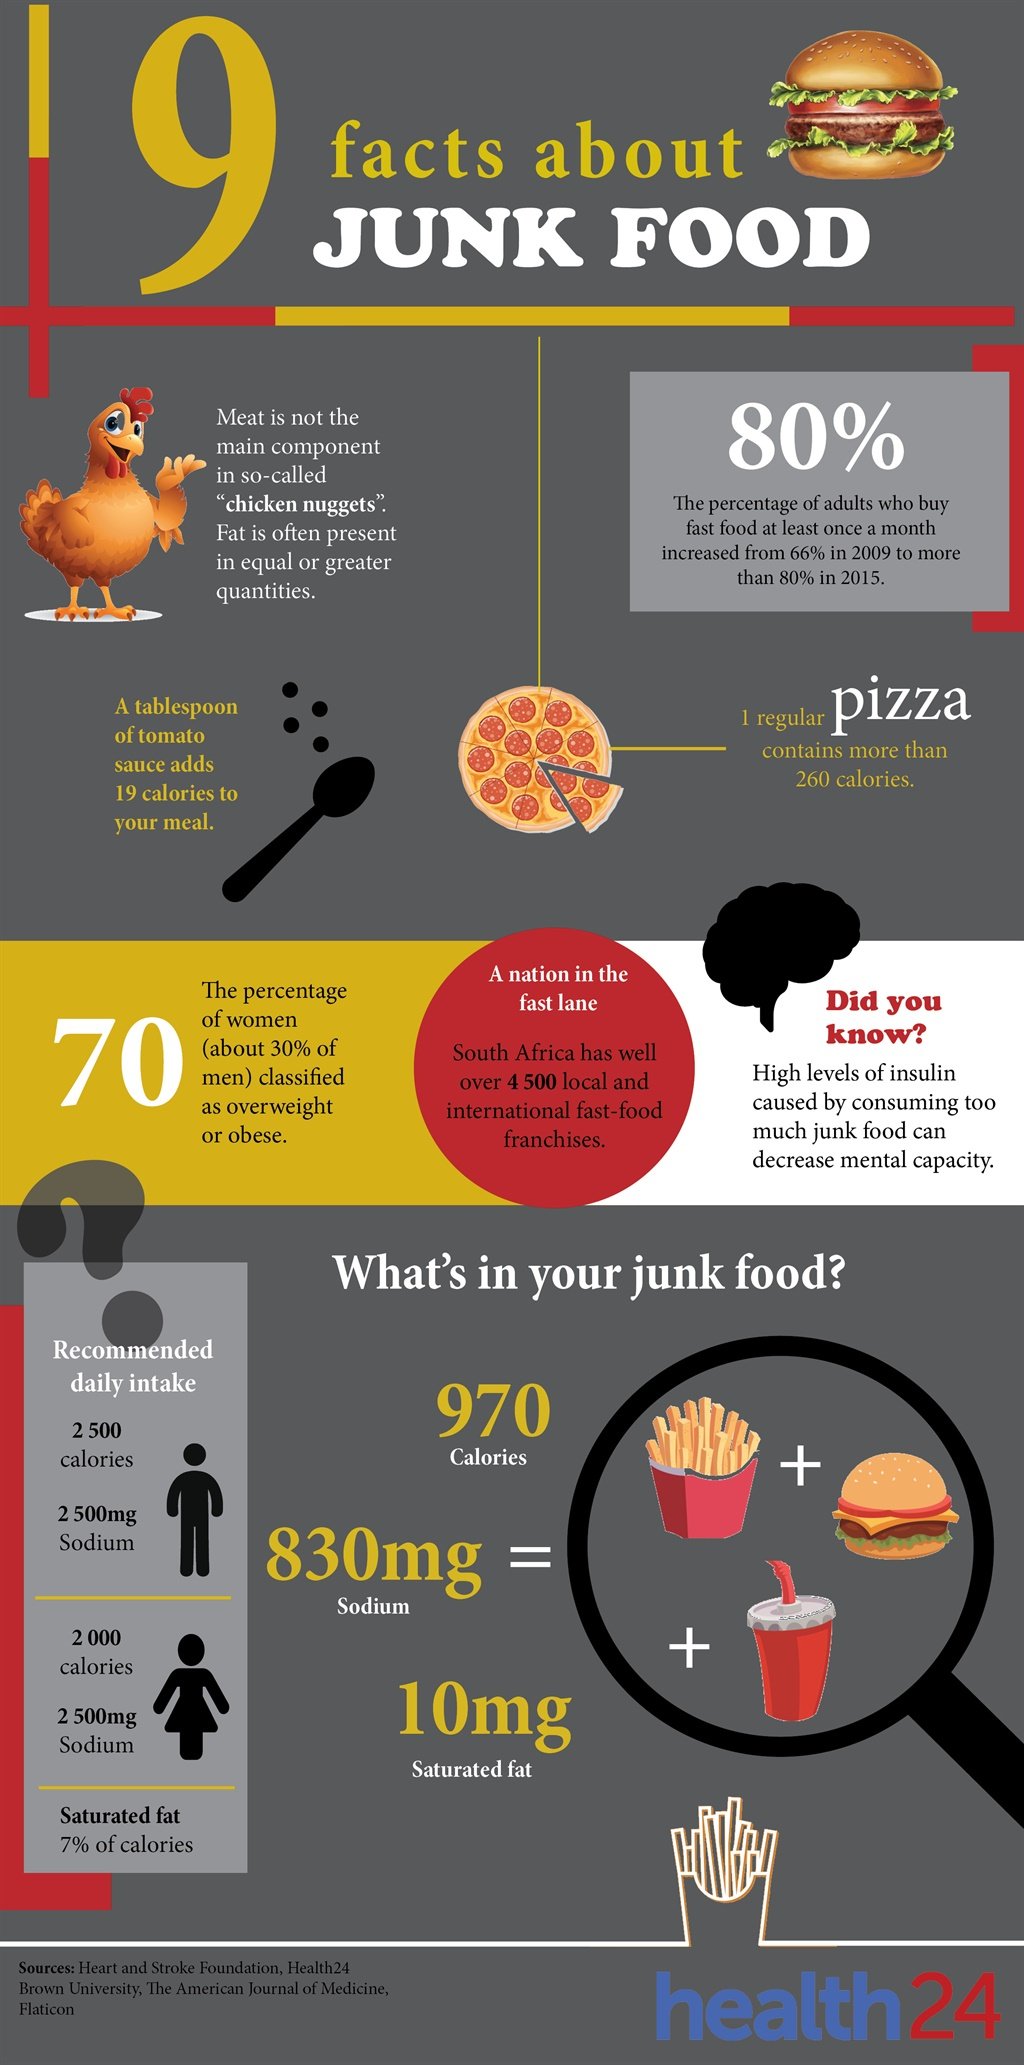 junk food, junk food health